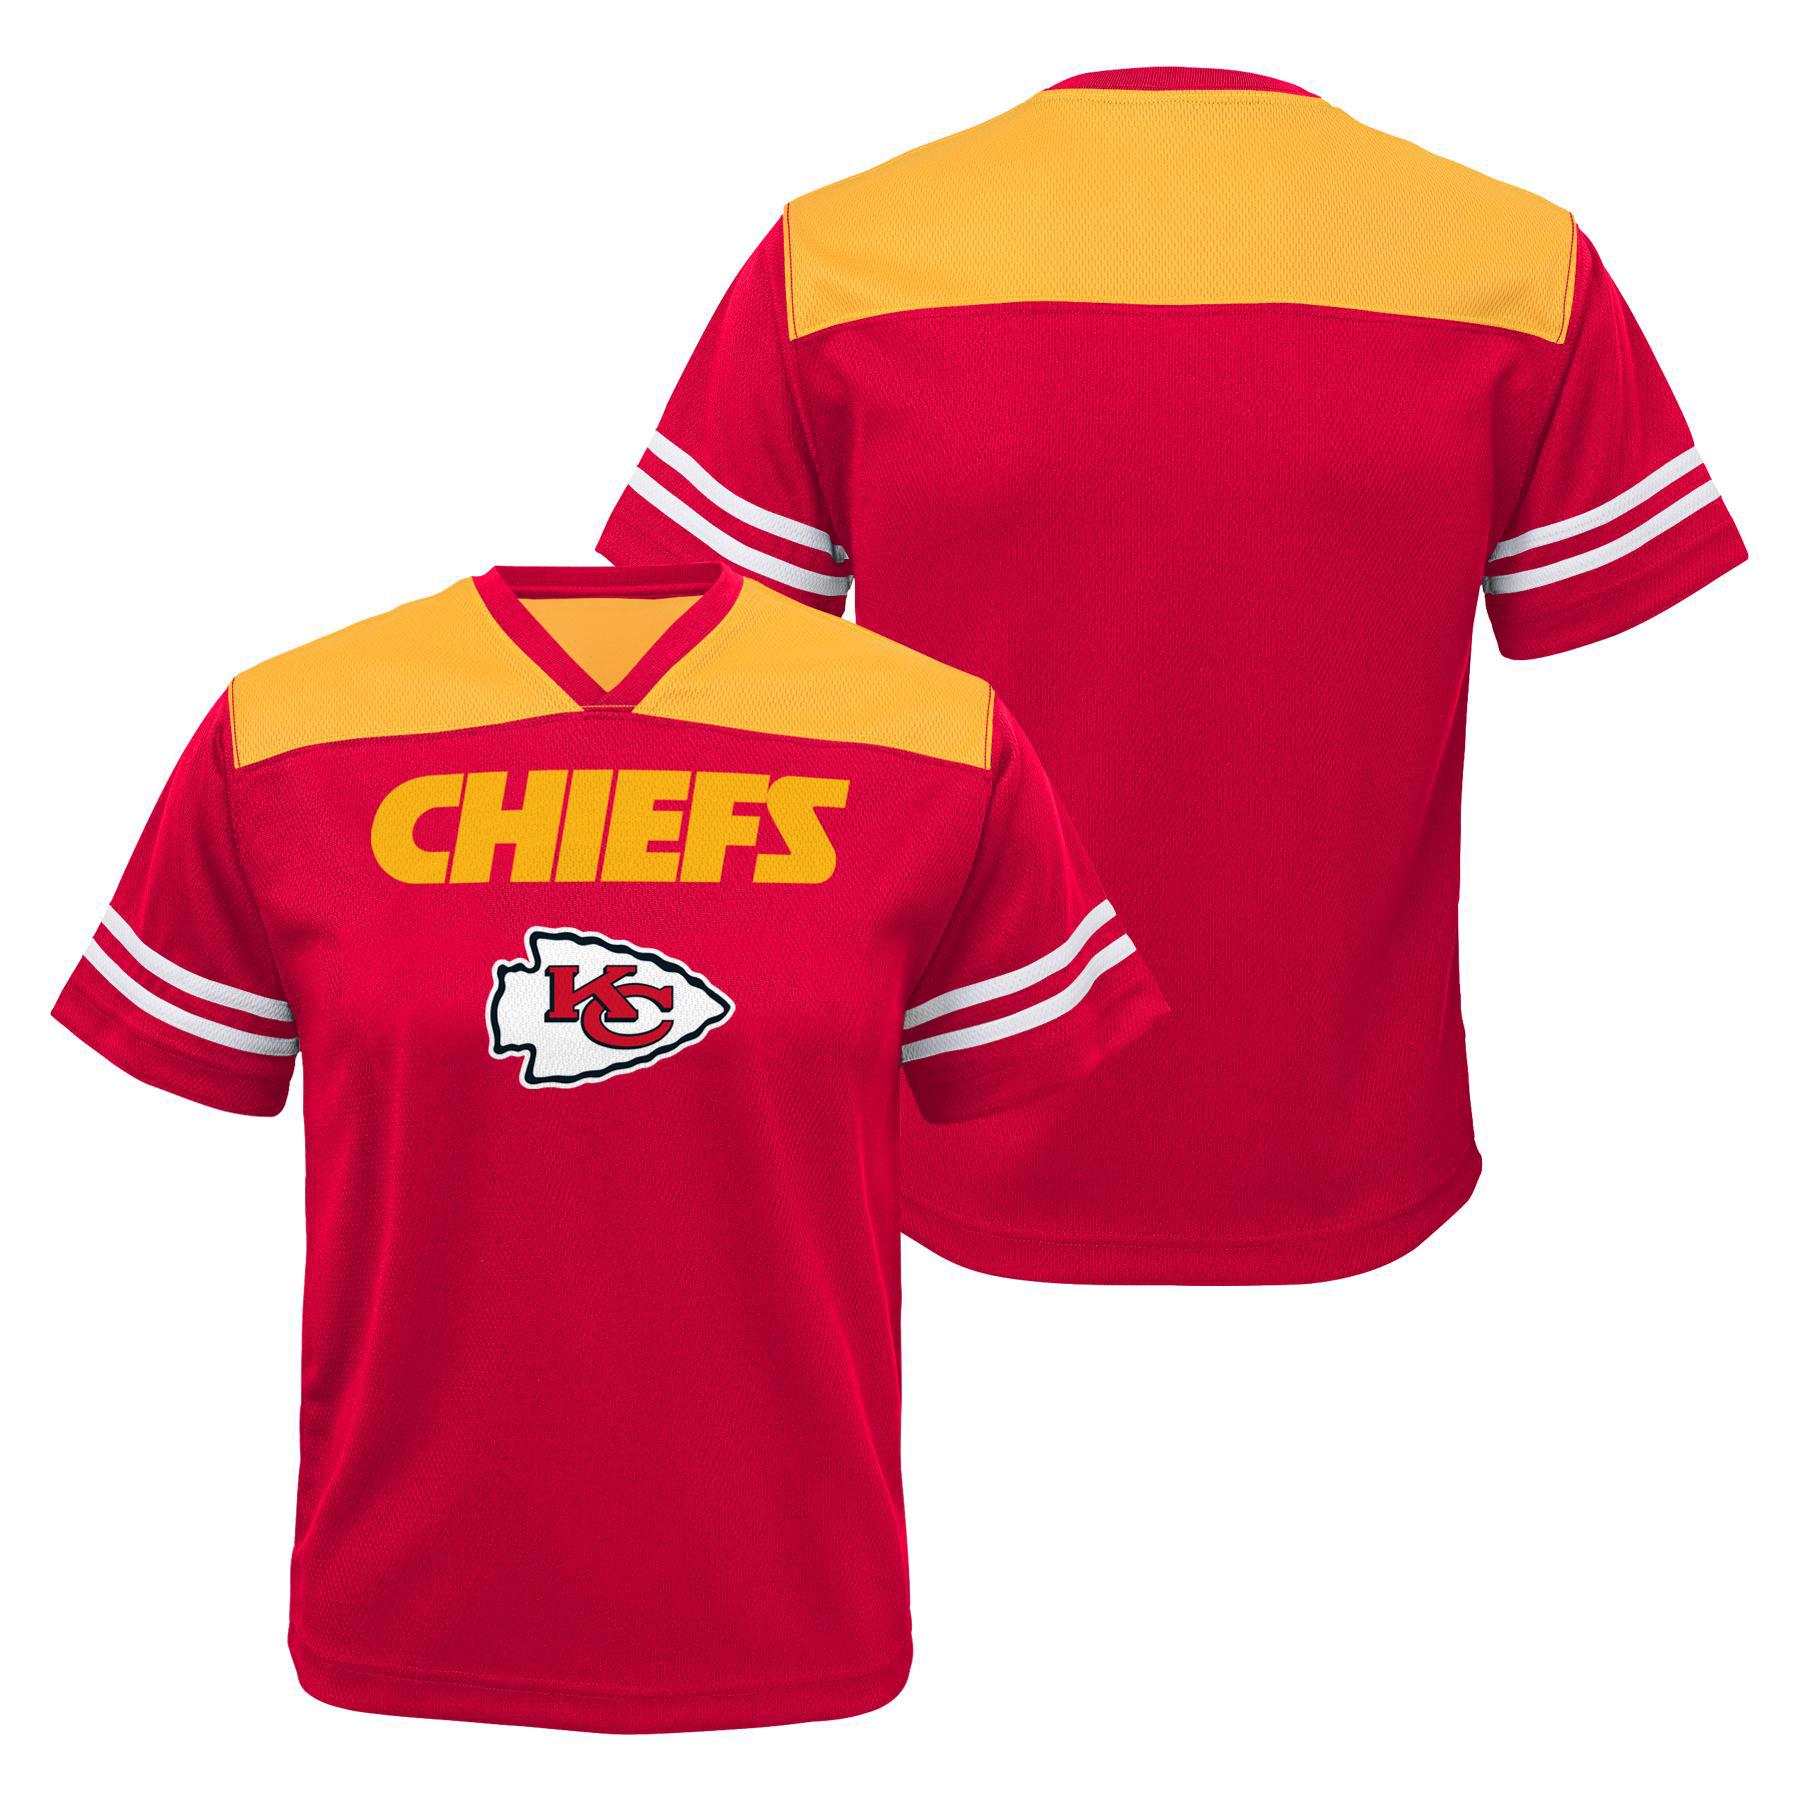 NFL Boys' Jersey Shirt - Kansas City Chiefs